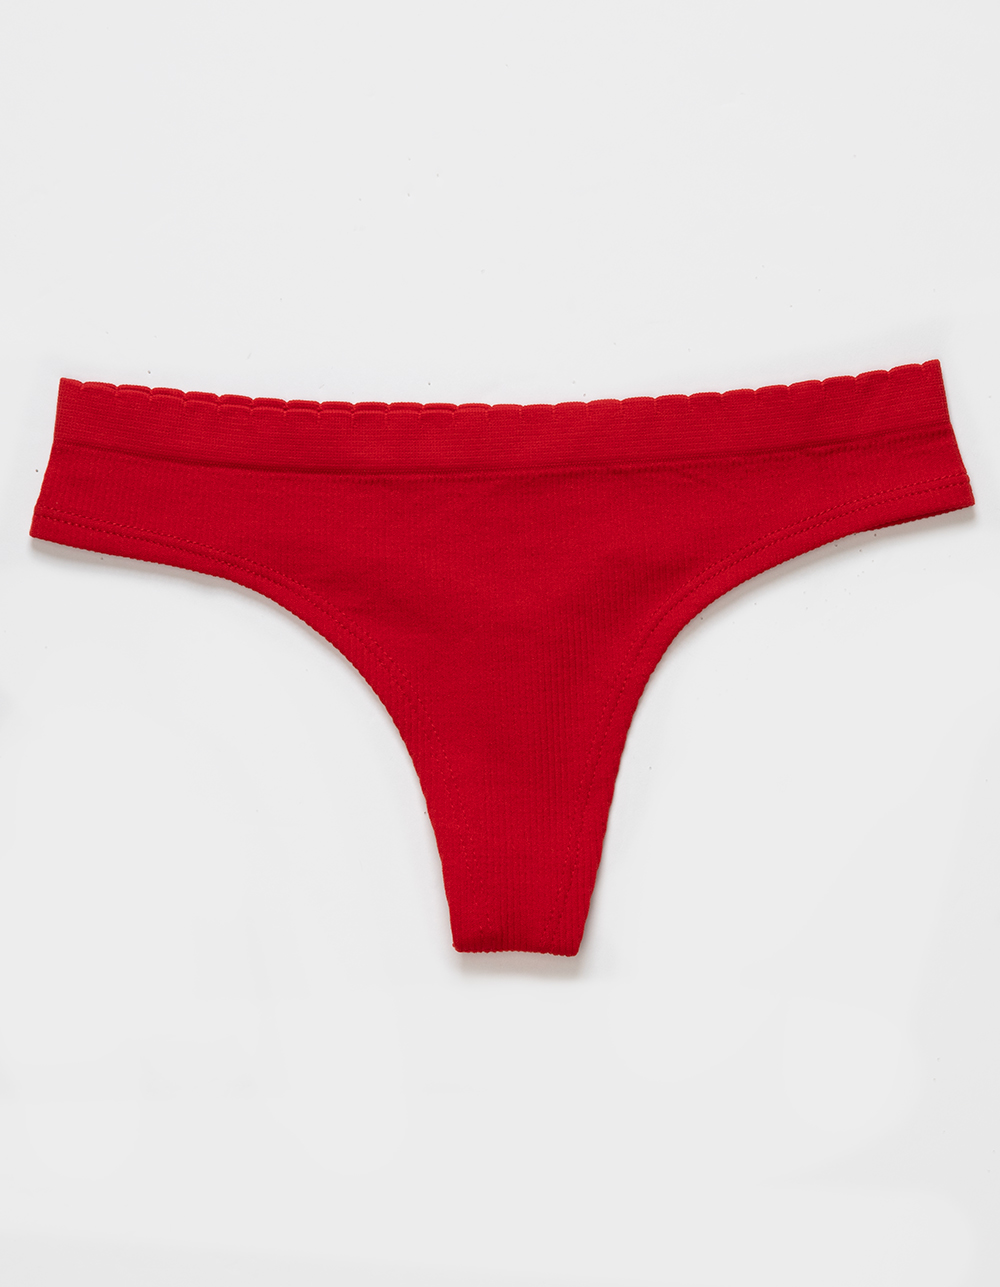 Women's Panties for sale in Woodbridge, Virginia